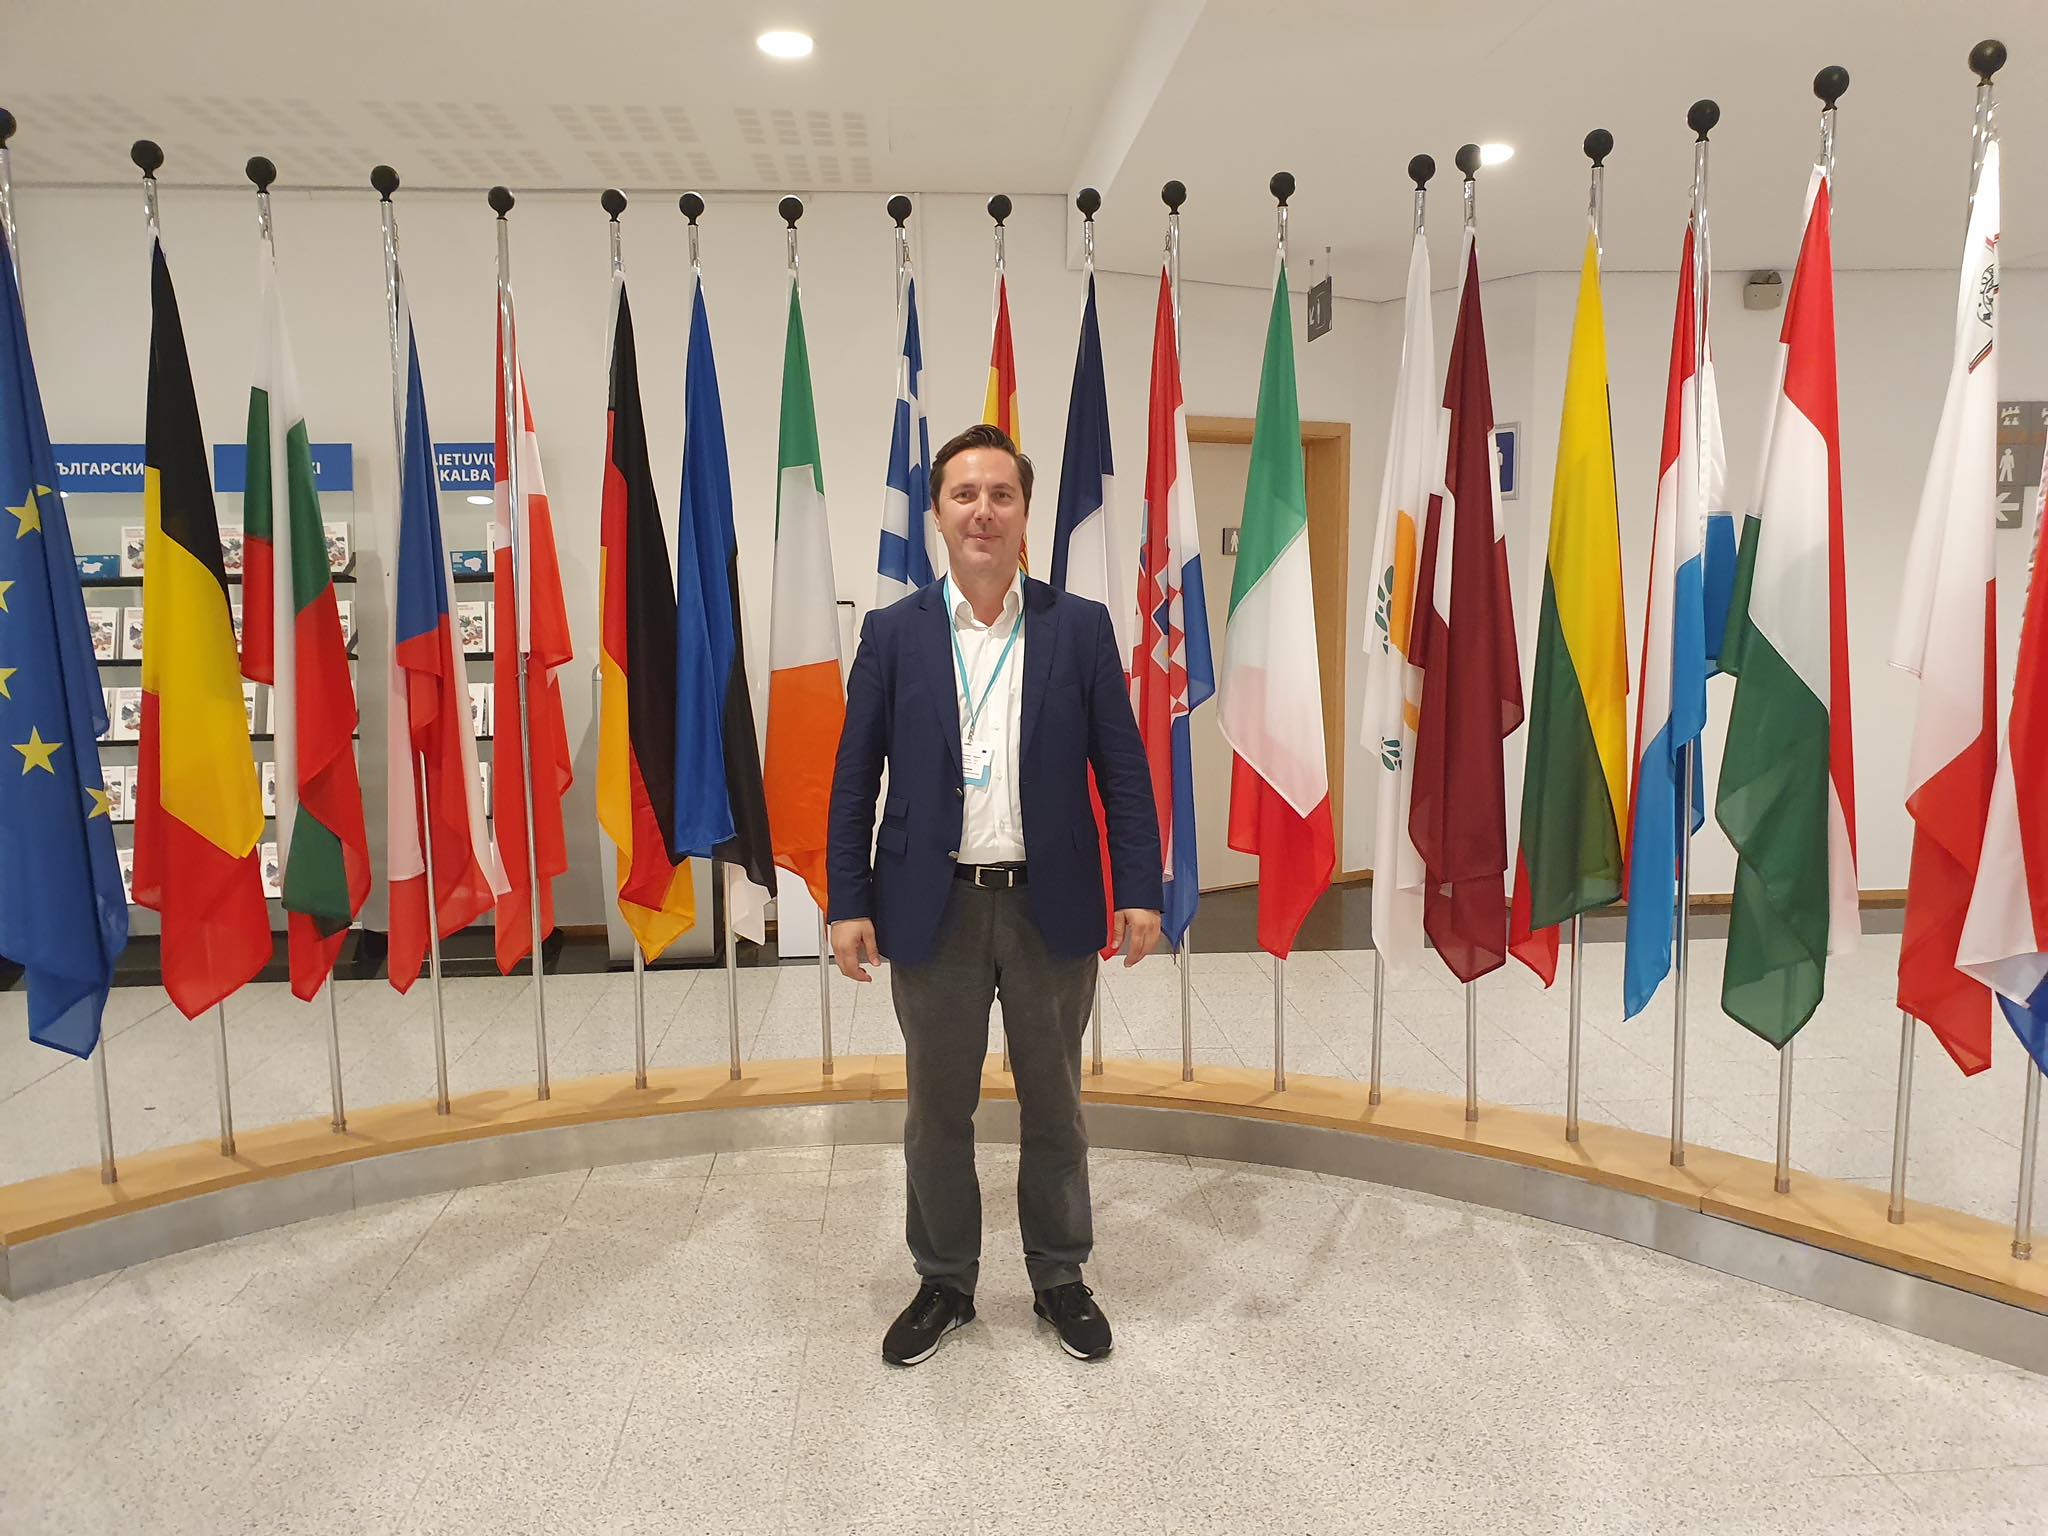 Ο Δήμαρχος Νάουσας μέλος του δικτύου της Ευρωπαϊκής Επιτροπής «Οικοδομώντας την Ευρώπη μαζί με τους εκπροσώπους της τοπικής αυτοδιοίκησης»